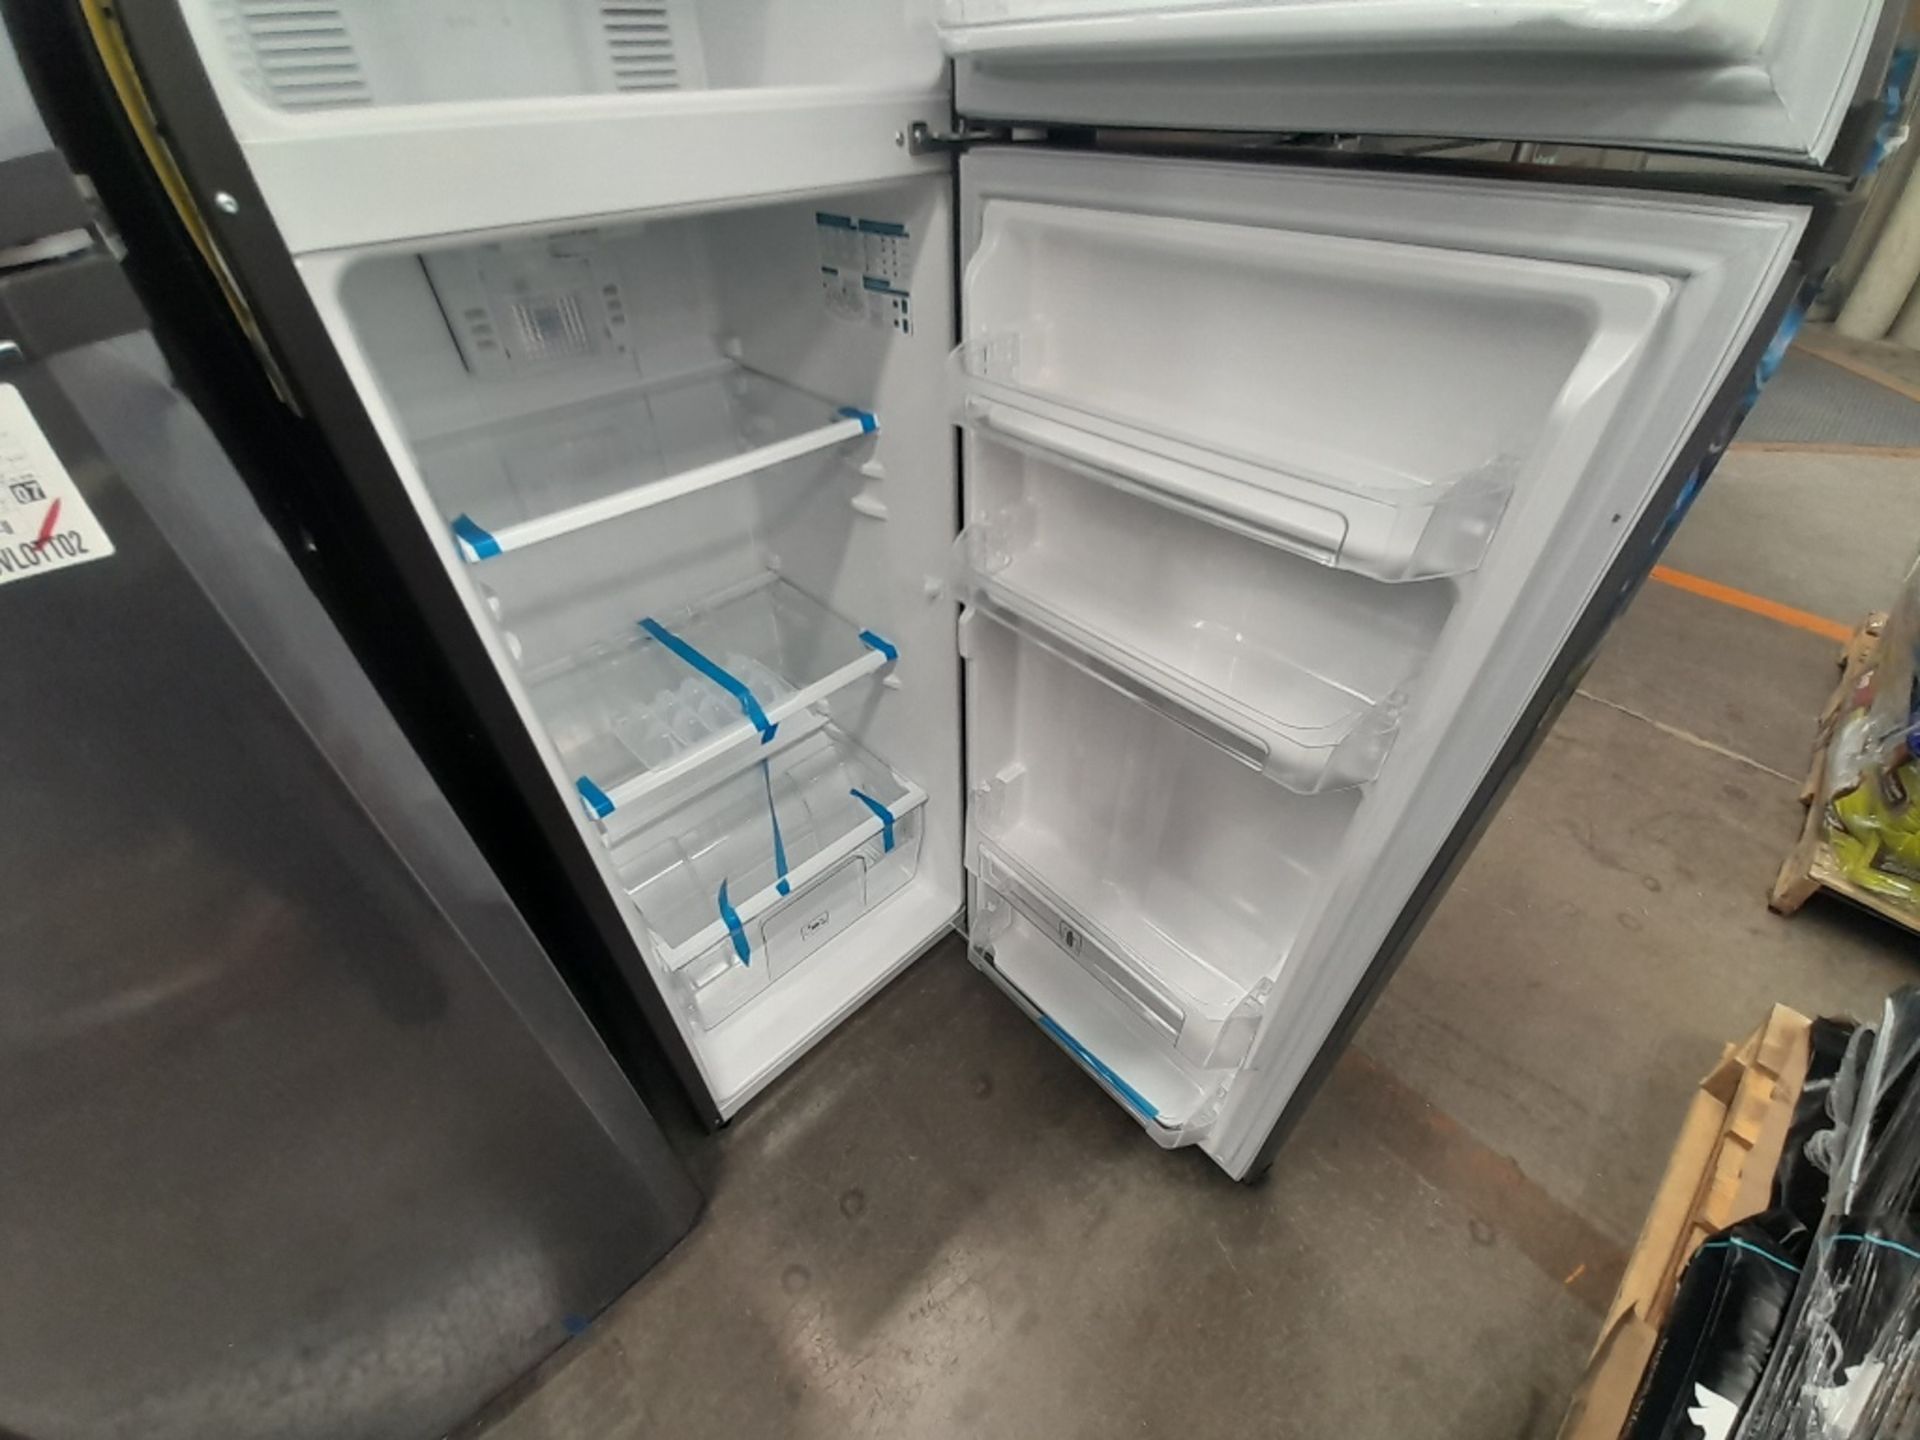 Lote de 2 refrigeradores contiene: 1 refrigerador Marca MABE, Modelo RMA250PVMR, Serie 610425, Colo - Image 7 of 8